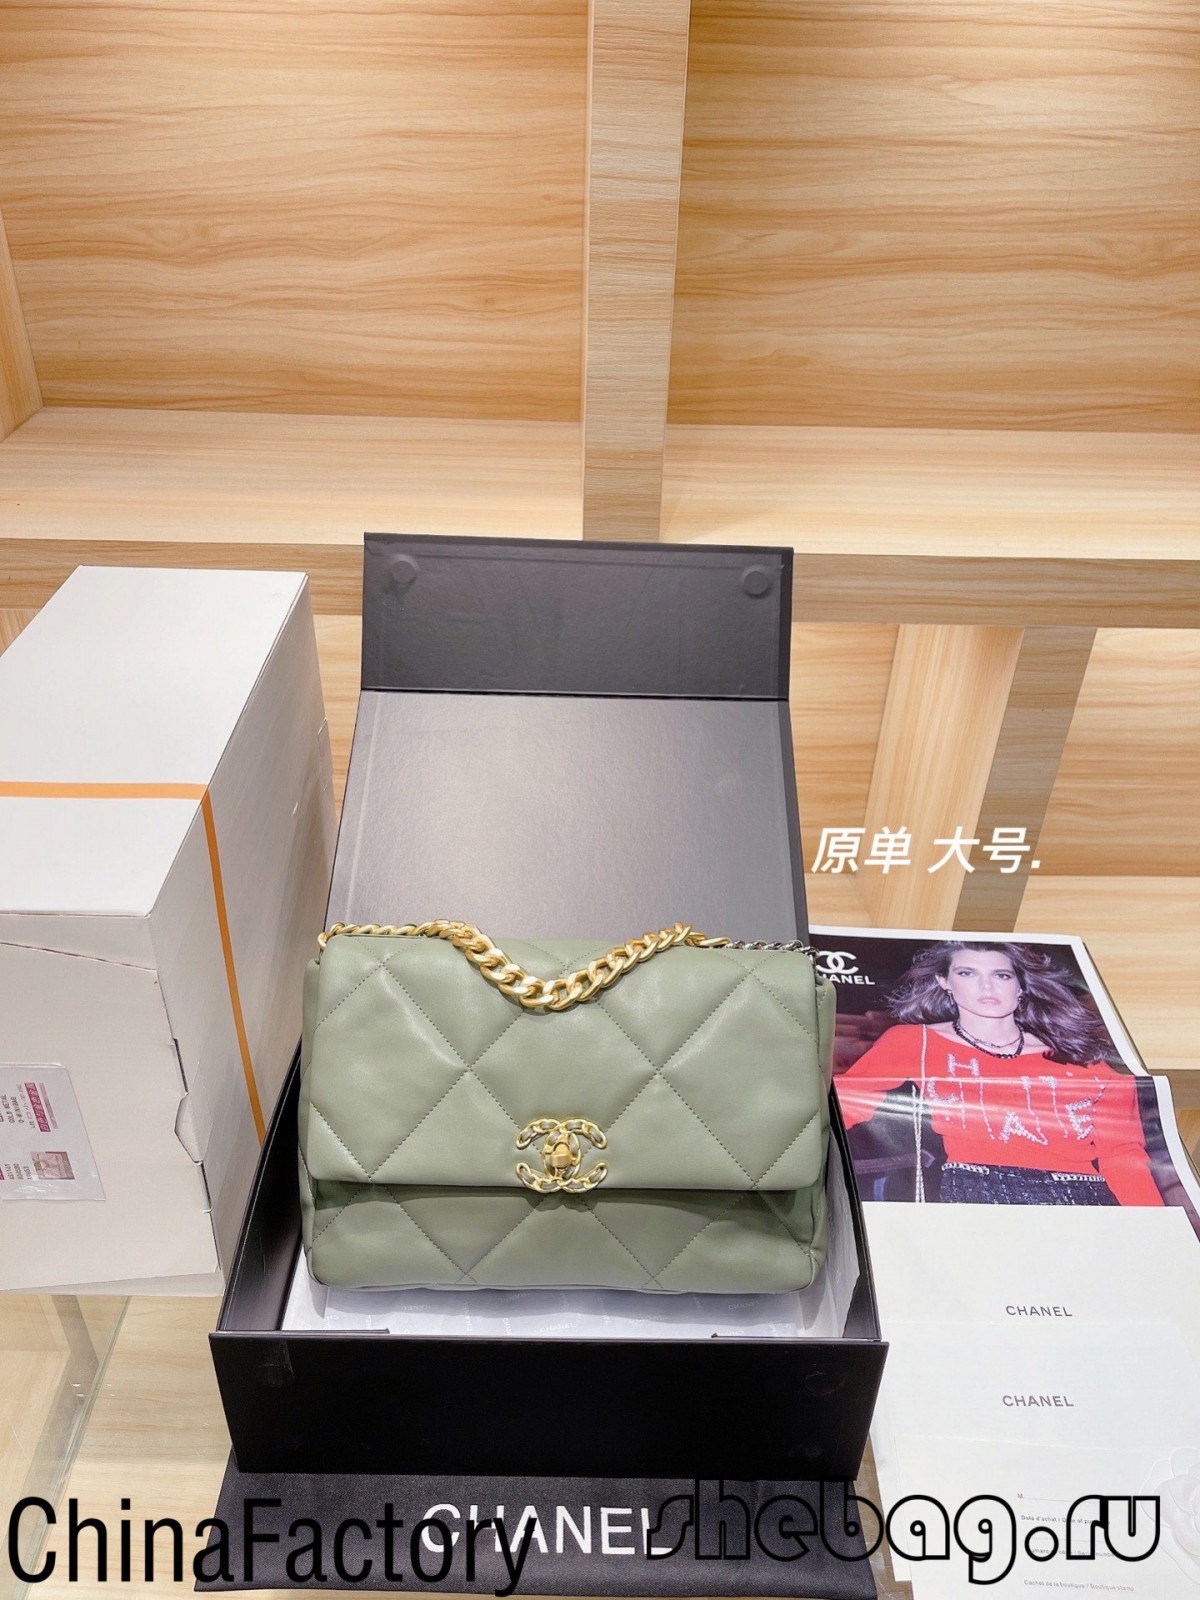 Aaa Chanel somas kopija: Chanel 19 somas kopijas apskats (atjaunināts 2022. gadā) — labākās kvalitātes viltotās Louis Vuitton somas tiešsaistes veikals, dizainera somas kopija ru